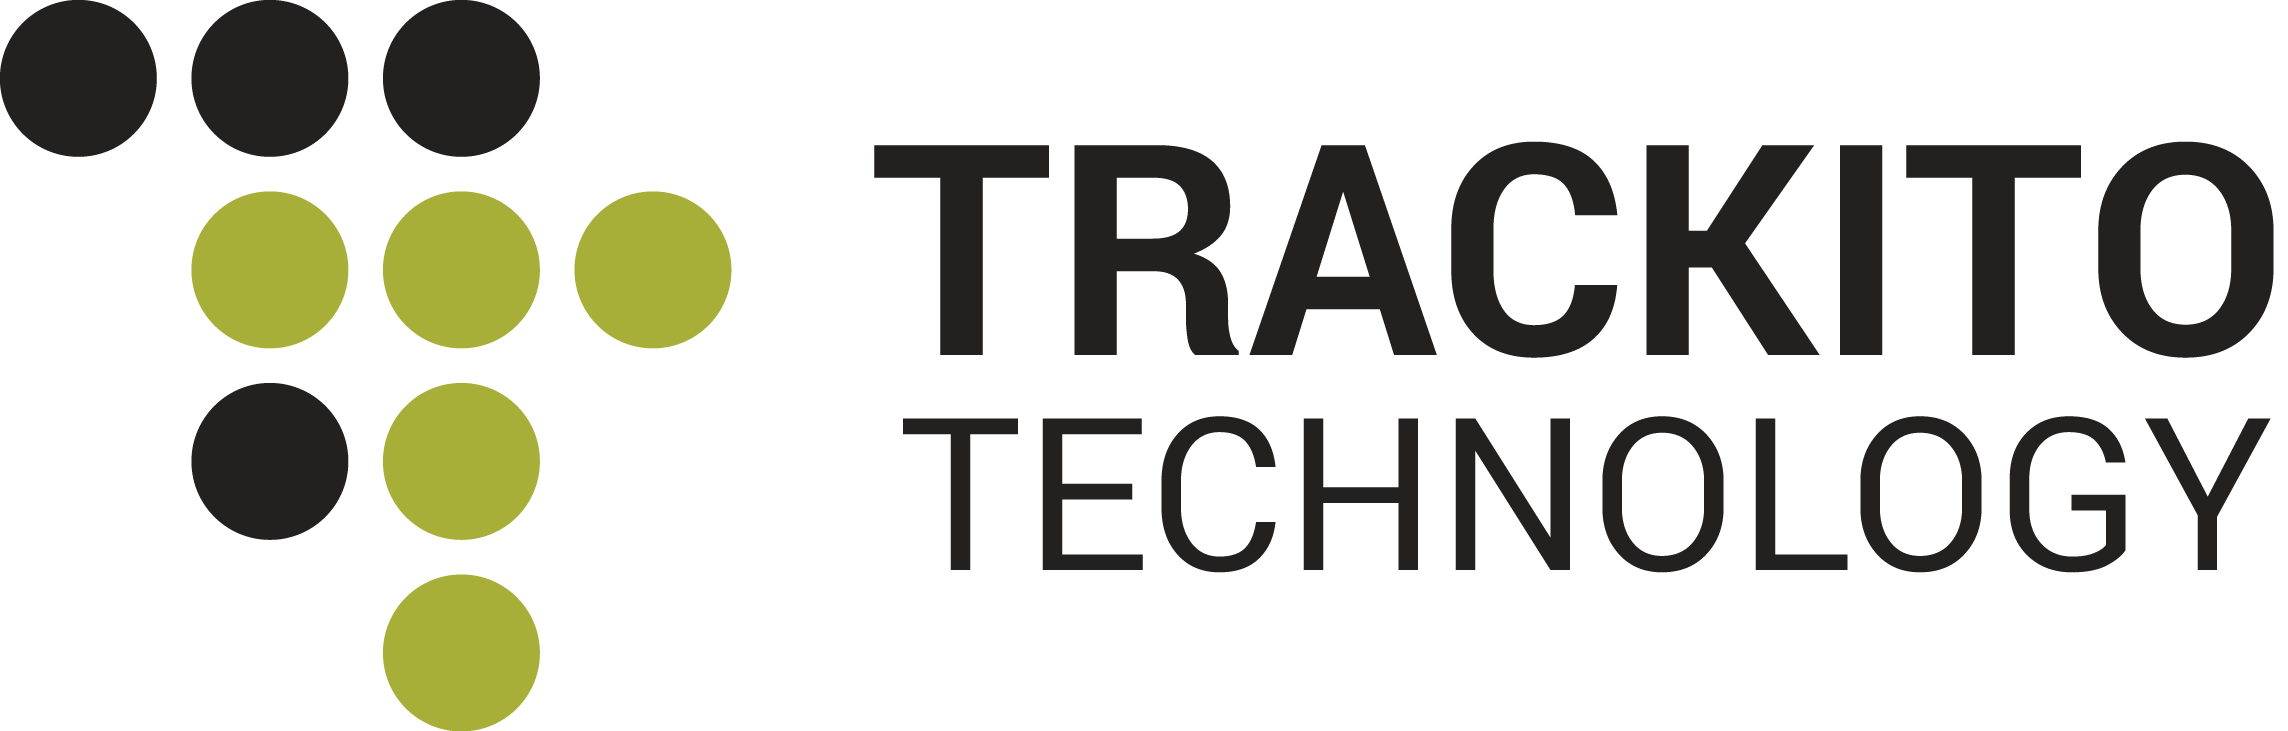 Doorito :: Trackito Technology E-shop